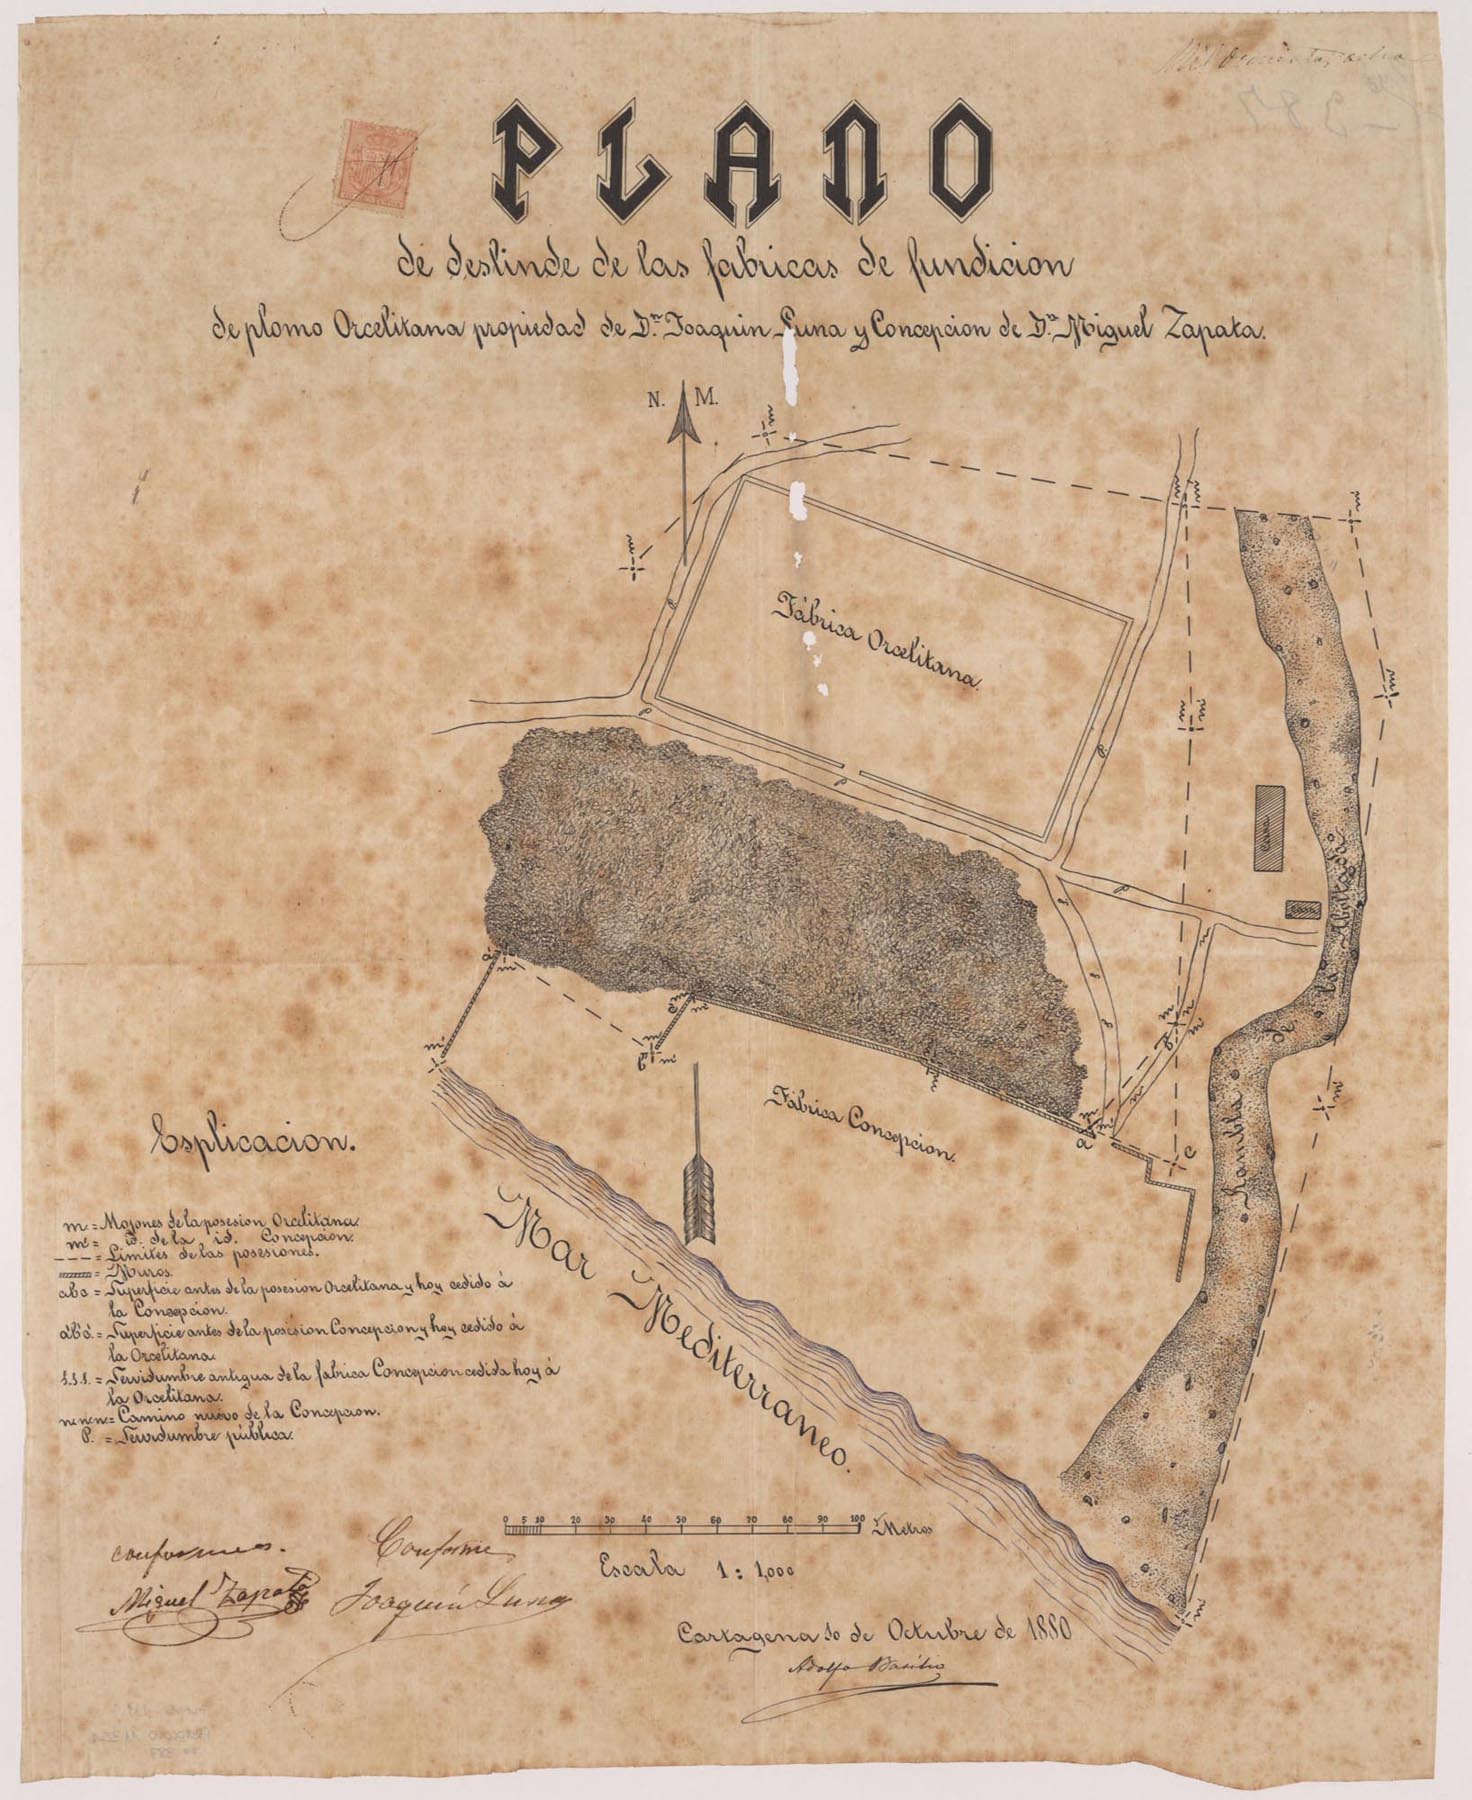 Plano de deslinde de las fábricas de fundición de plomo Orcelitana propiedad de don Joaquín Luna y Concepción de don Miguel Zapata.